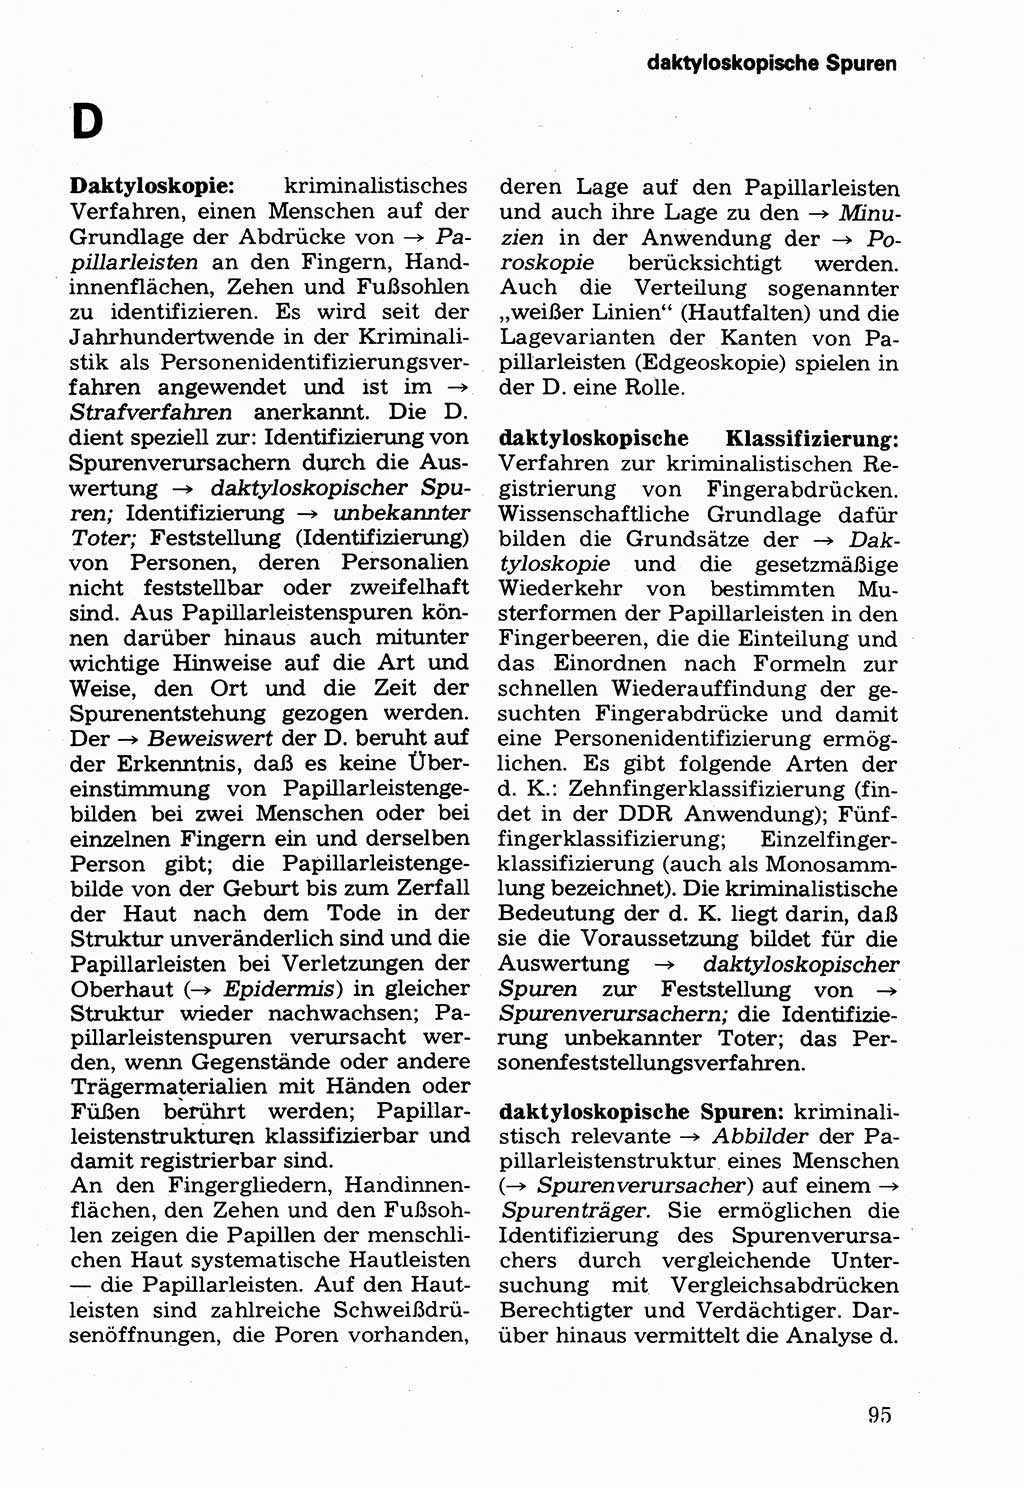 Wörterbuch der sozialistischen Kriminalistik [Deutsche Demokratische Republik (DDR)] 1981, Seite 95 (Wb. soz. Krim. DDR 1981, S. 95)